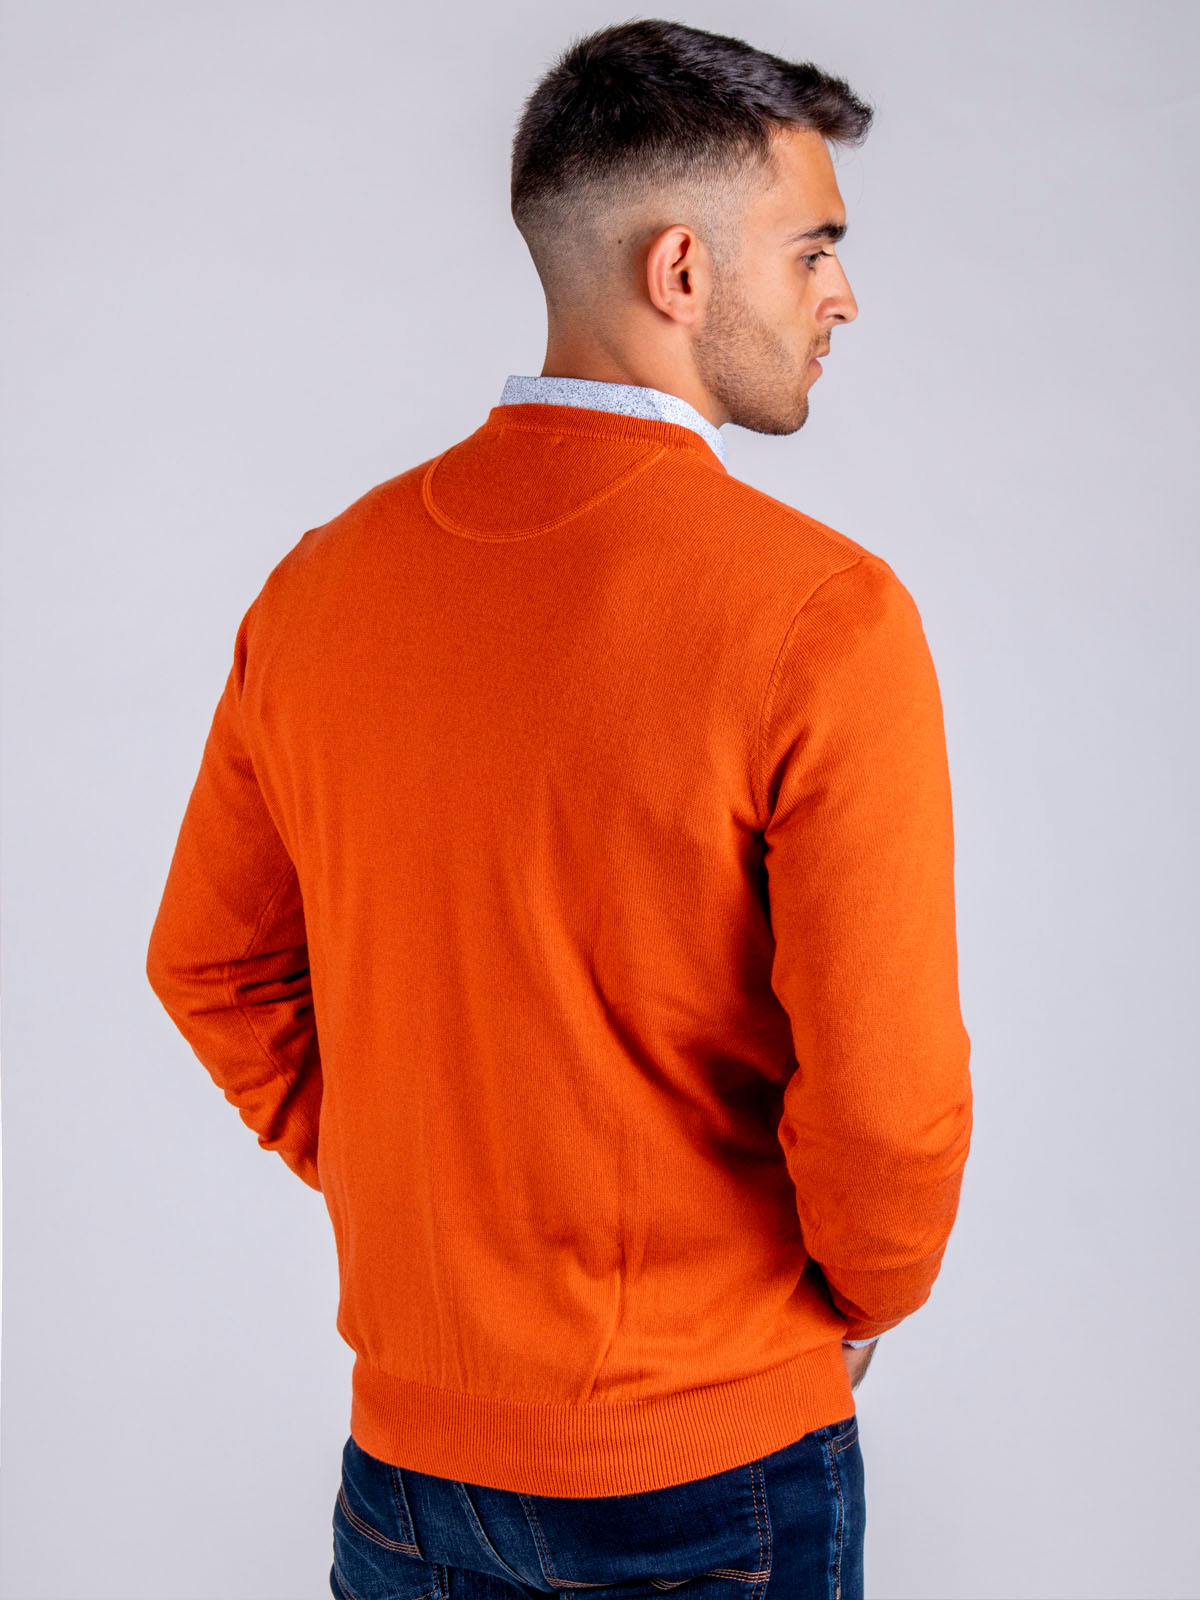 Pulover portocaliu cu lana merinos - 33082 € 42.74 img3